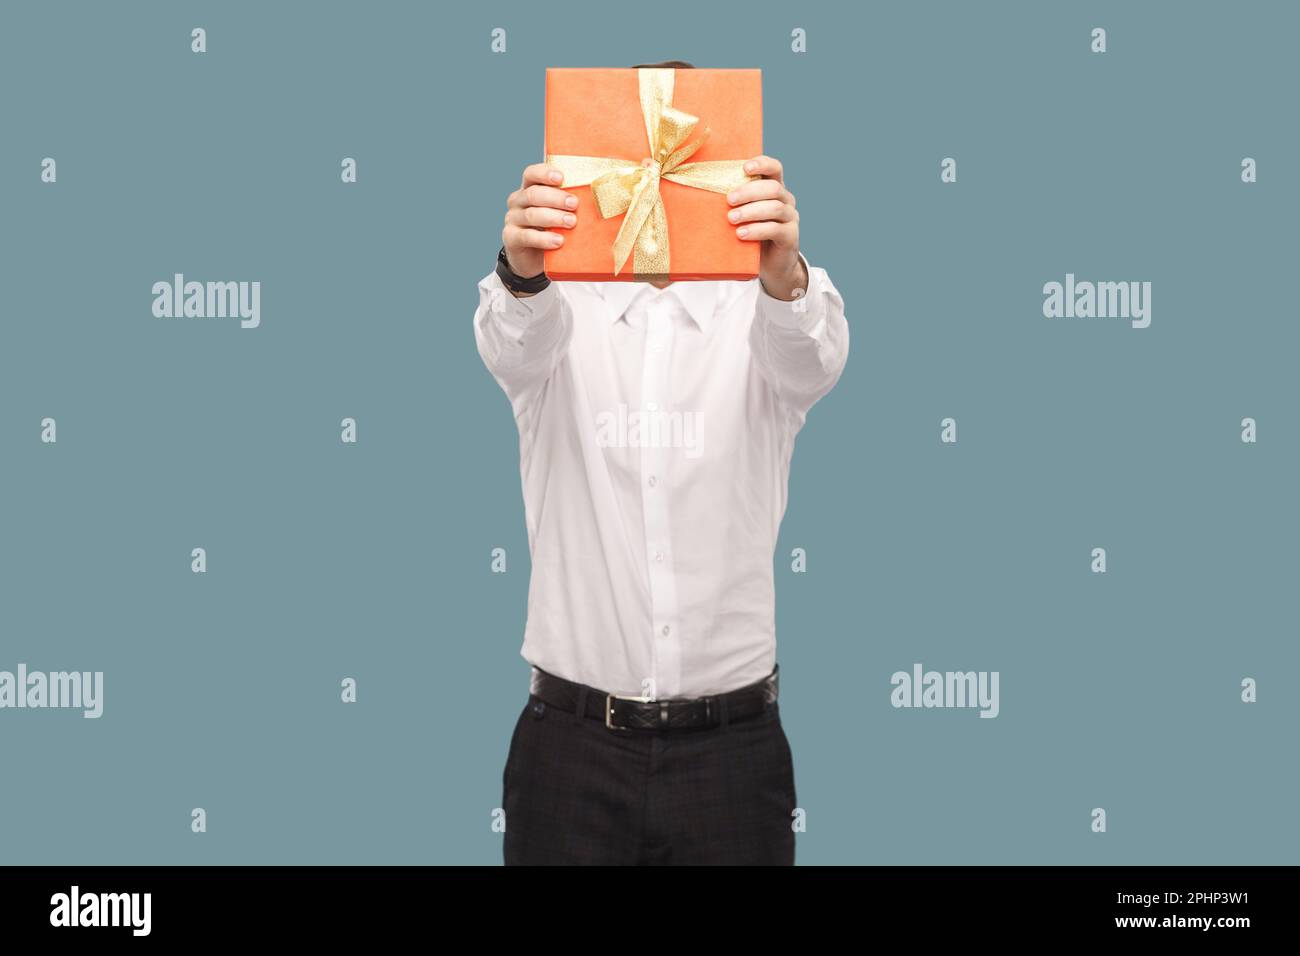 Portrait d'un homme anonyme inconnu tenant et couvrant son visage avec une  boîte cadeau rouge, donnant le cadeau pour anniversaire, en portant un  studio d'intérieur tourné isolé sur fond bleu clair Photo